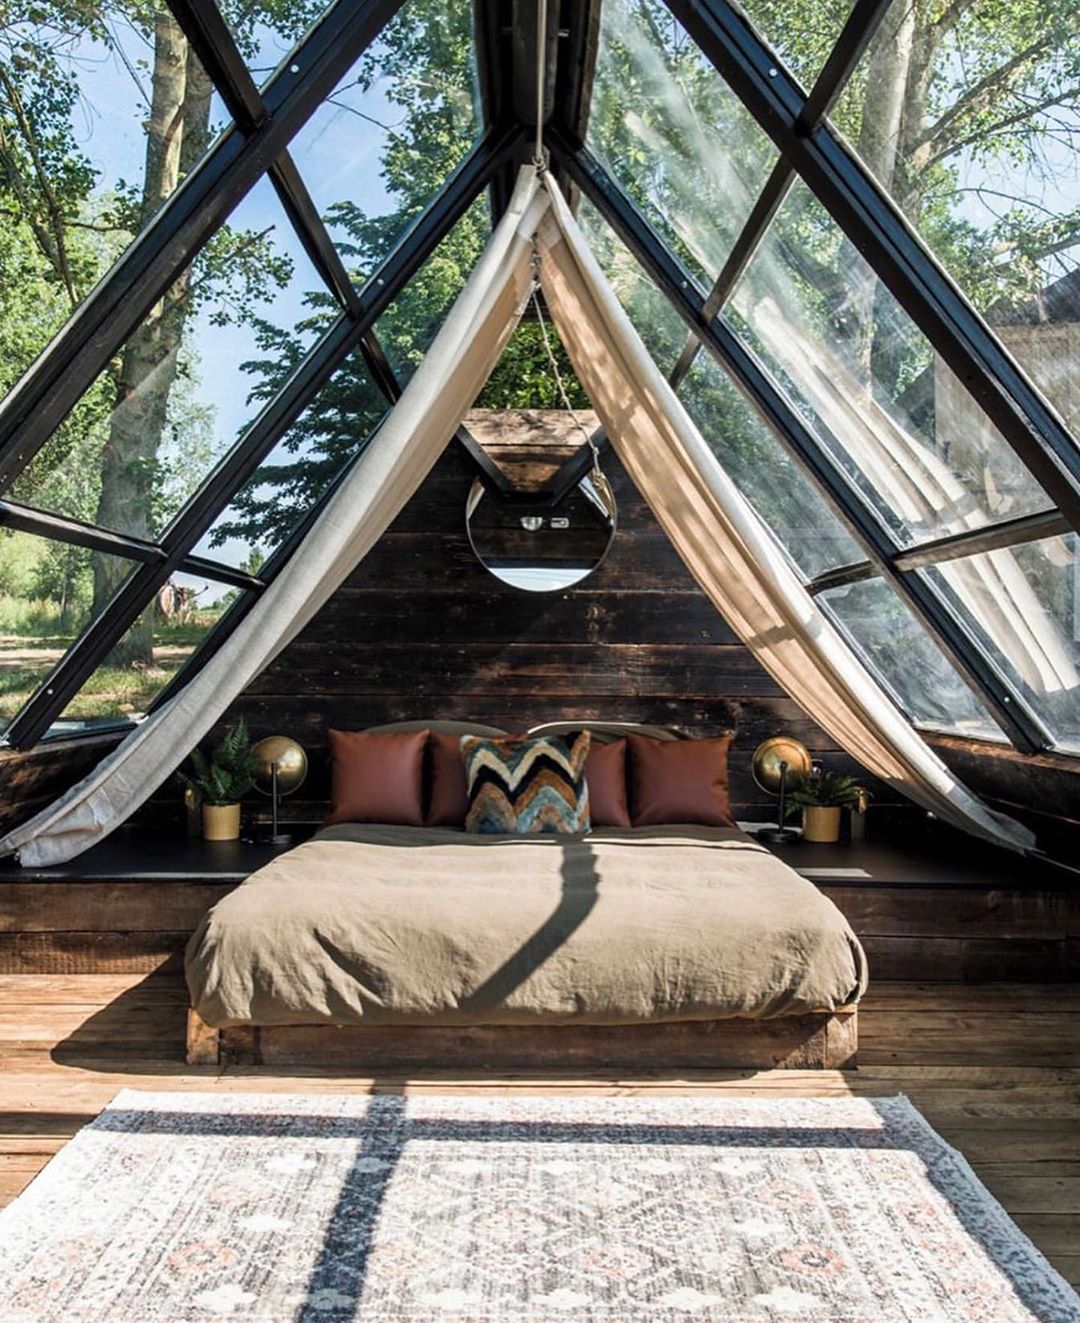 Và cuối cùng là phòng ngủ thiết kế giống như một túp lều bằng gỗ mộc mạc,cửa kính trong suốt kết hợp vải lanh mềm mại giữa cánh rừng lãng mạn. Thiết kế này vừa giúp con người giao hòa với thiên nhiên vừa tạo được sự riêng tư, kín đáo khi cần thiết.